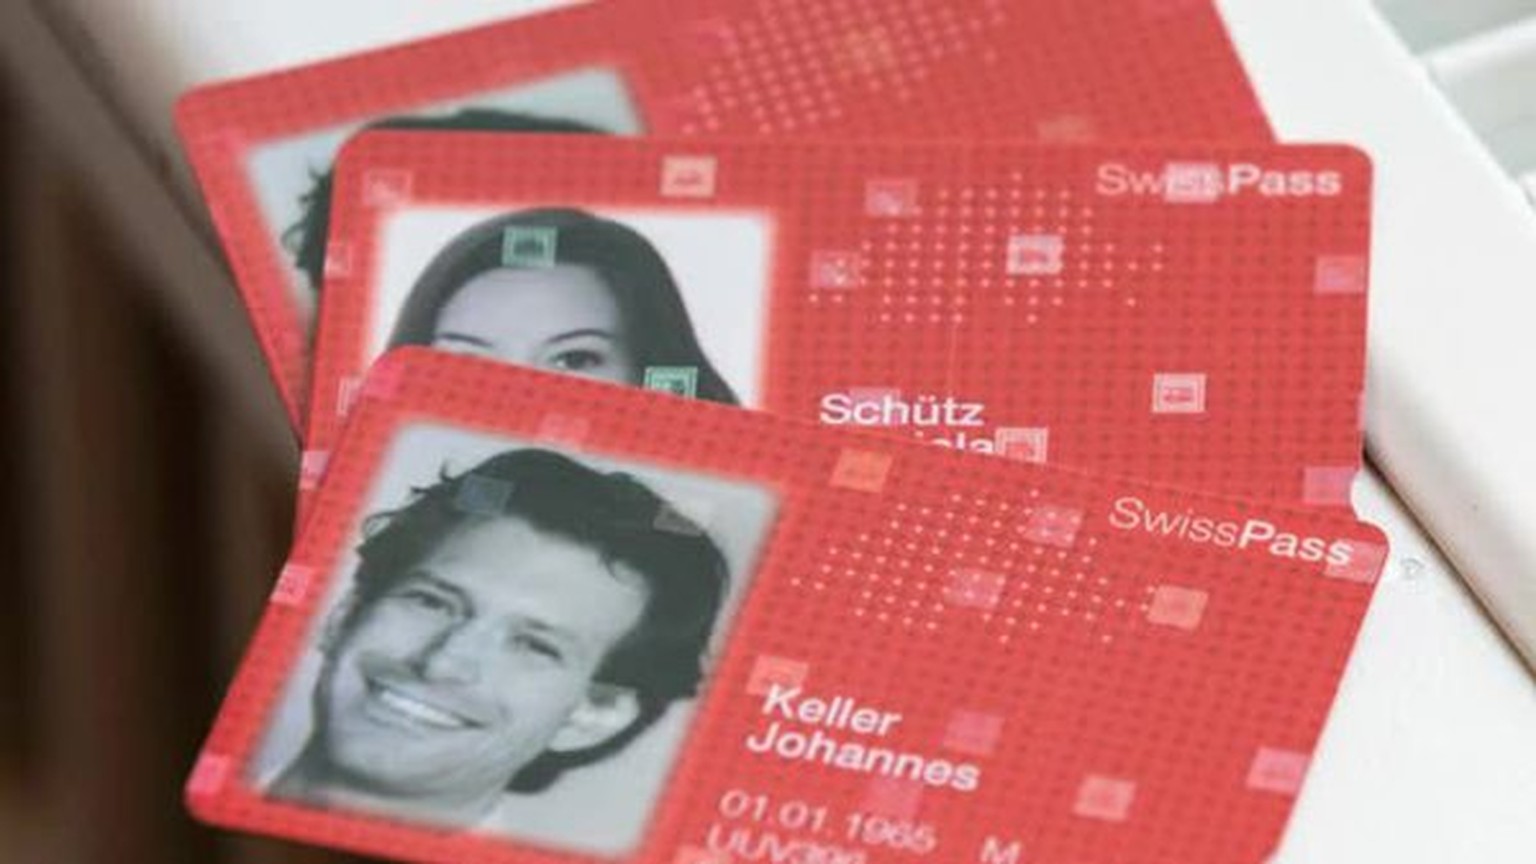 Die SBB und der Verband öffentlicher Verkehr stellten heute den Swiss Pass vor. Künftig sollen GA, Halbtax und weitere Abos auf einer einzigen Karte gespeichert sein. Der Swiss Pass ist ein erster Sch ...